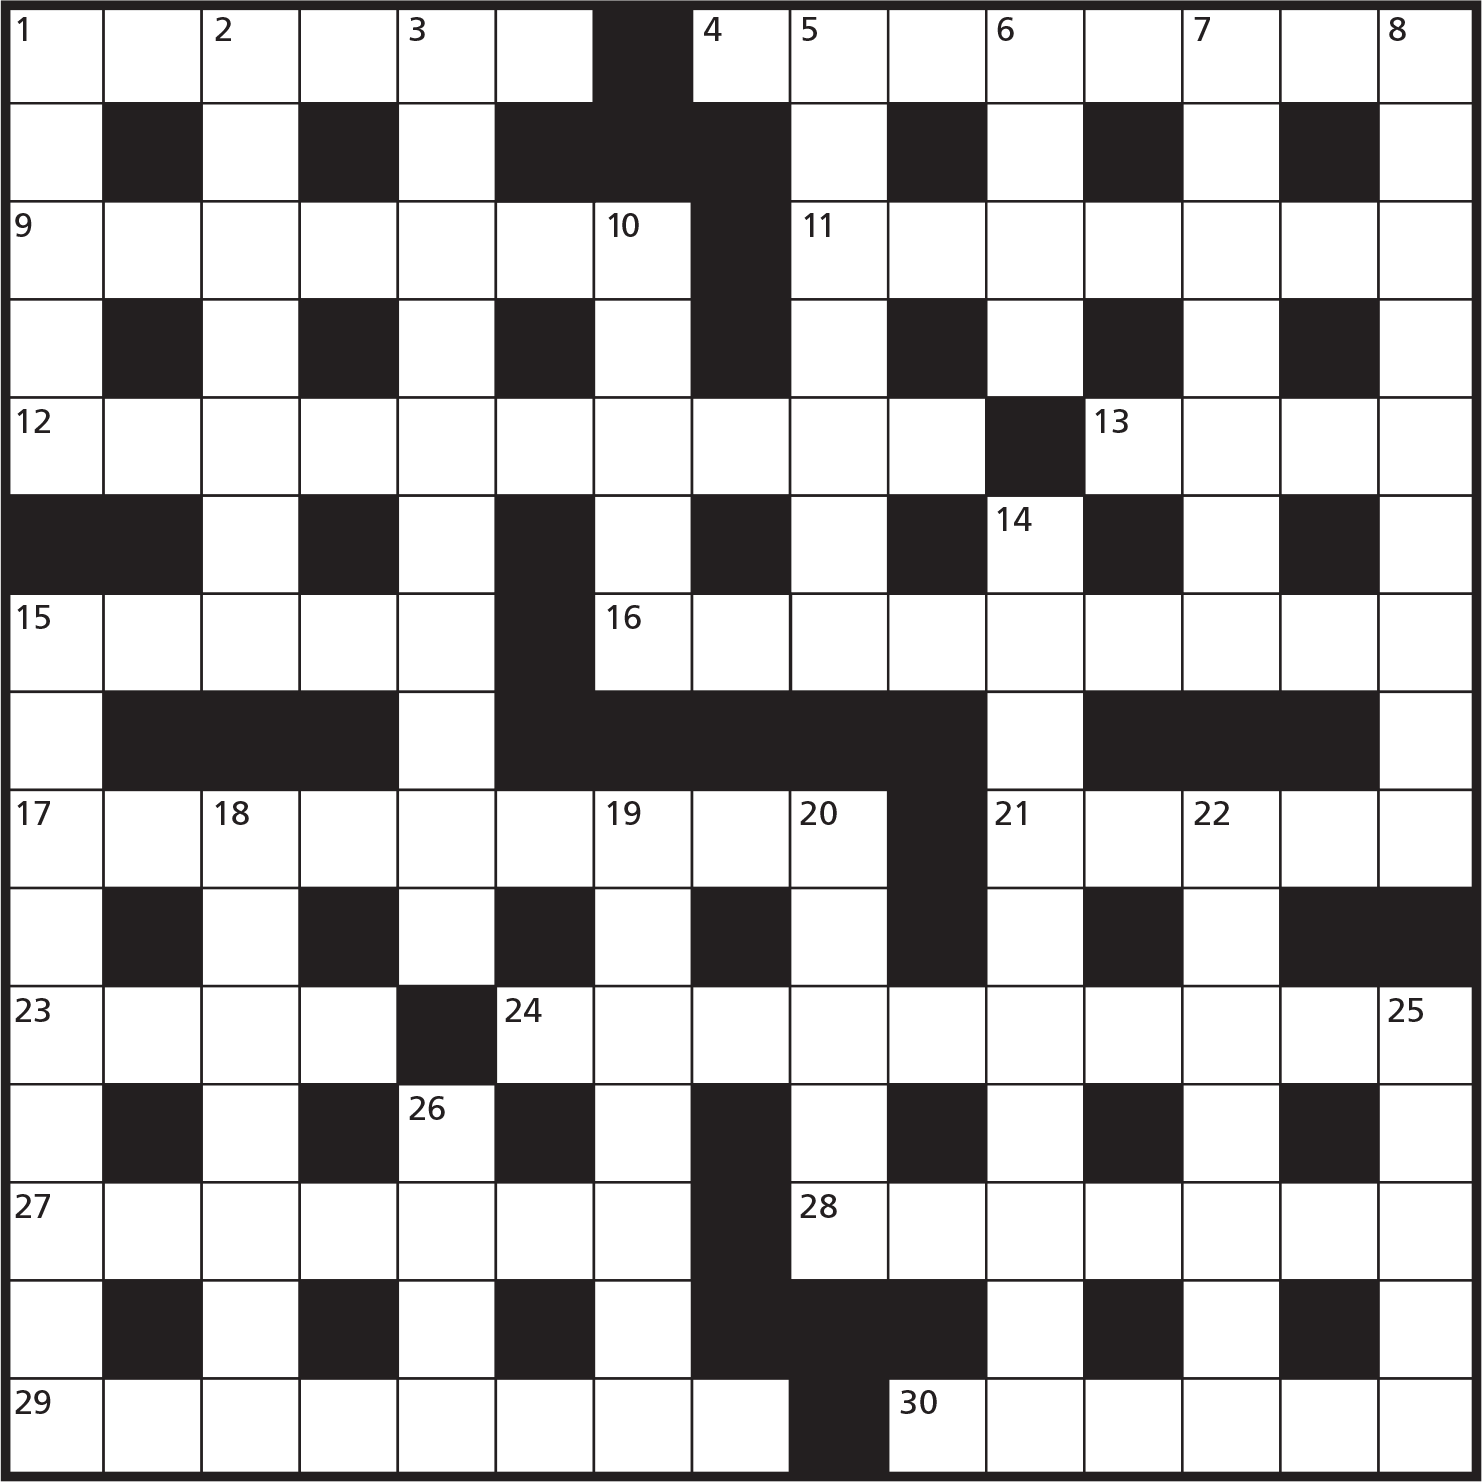 Tyrant crossword clue